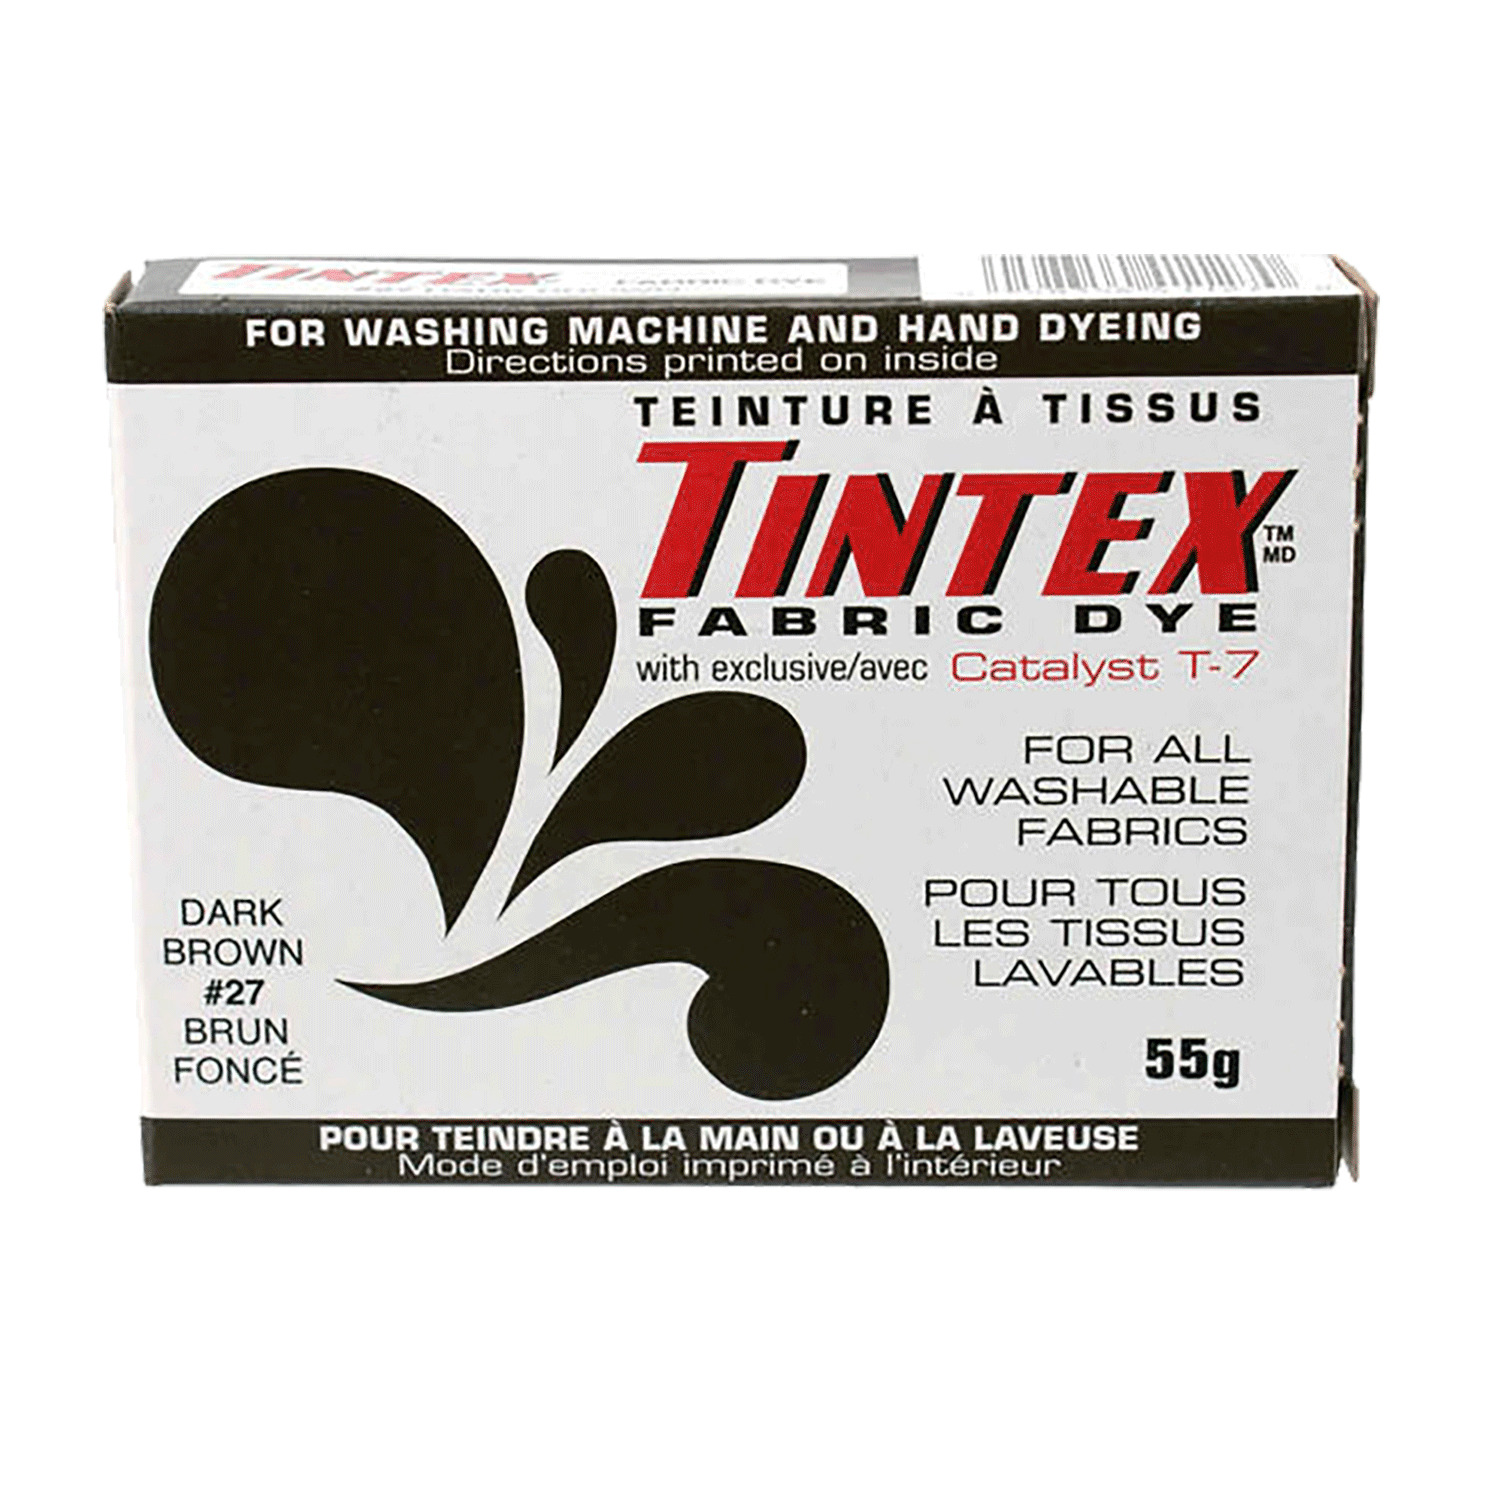 Tintex - Teinture à tissues tout usage - Brun foncé #27